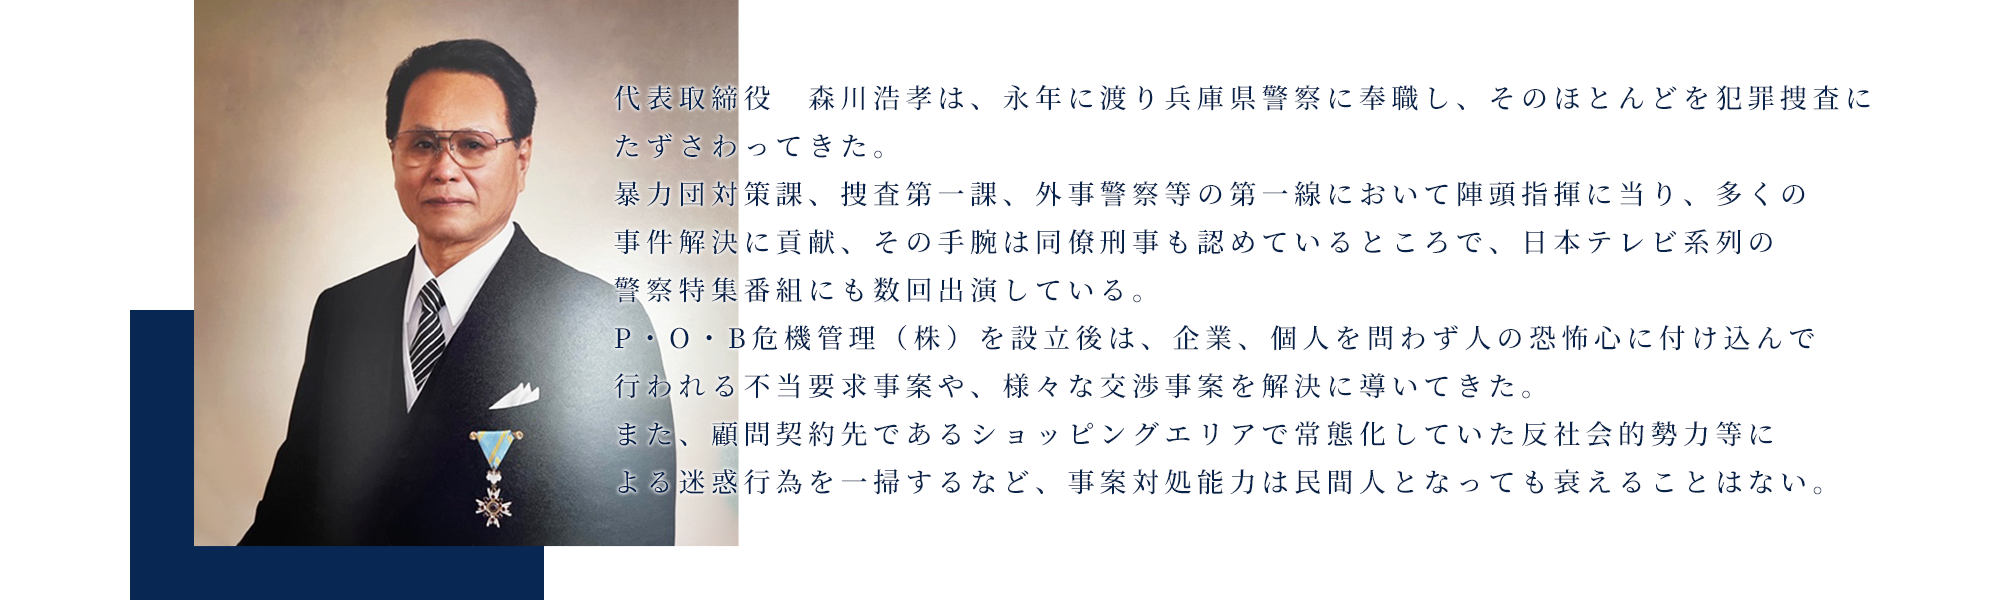 代表取締役　森川浩孝は、永年に渡り兵庫県警察に奉職し、そのほとんどを犯罪捜査にたずさわってきた。   暴力団対策課、捜査第一課、外事警察等の第一線において陣頭指揮に当り、多くの事件解決に貢献、その手腕は同僚刑事も認めているところで、日本テレビ系列の警察特集番組にも数回出演している。 　P・O・B危機管理（株）を設立後は、企業、個人を問わず人の恐怖心に付け込んで行われる不当要求事案や、様々な交渉事案を解決に導いてきた。    また、顧問契約先であるショッピングエリアで常態化していた反社会的勢力等による迷惑行為を一掃するなど、事案対処能力は民間人となっても衰えることはない。